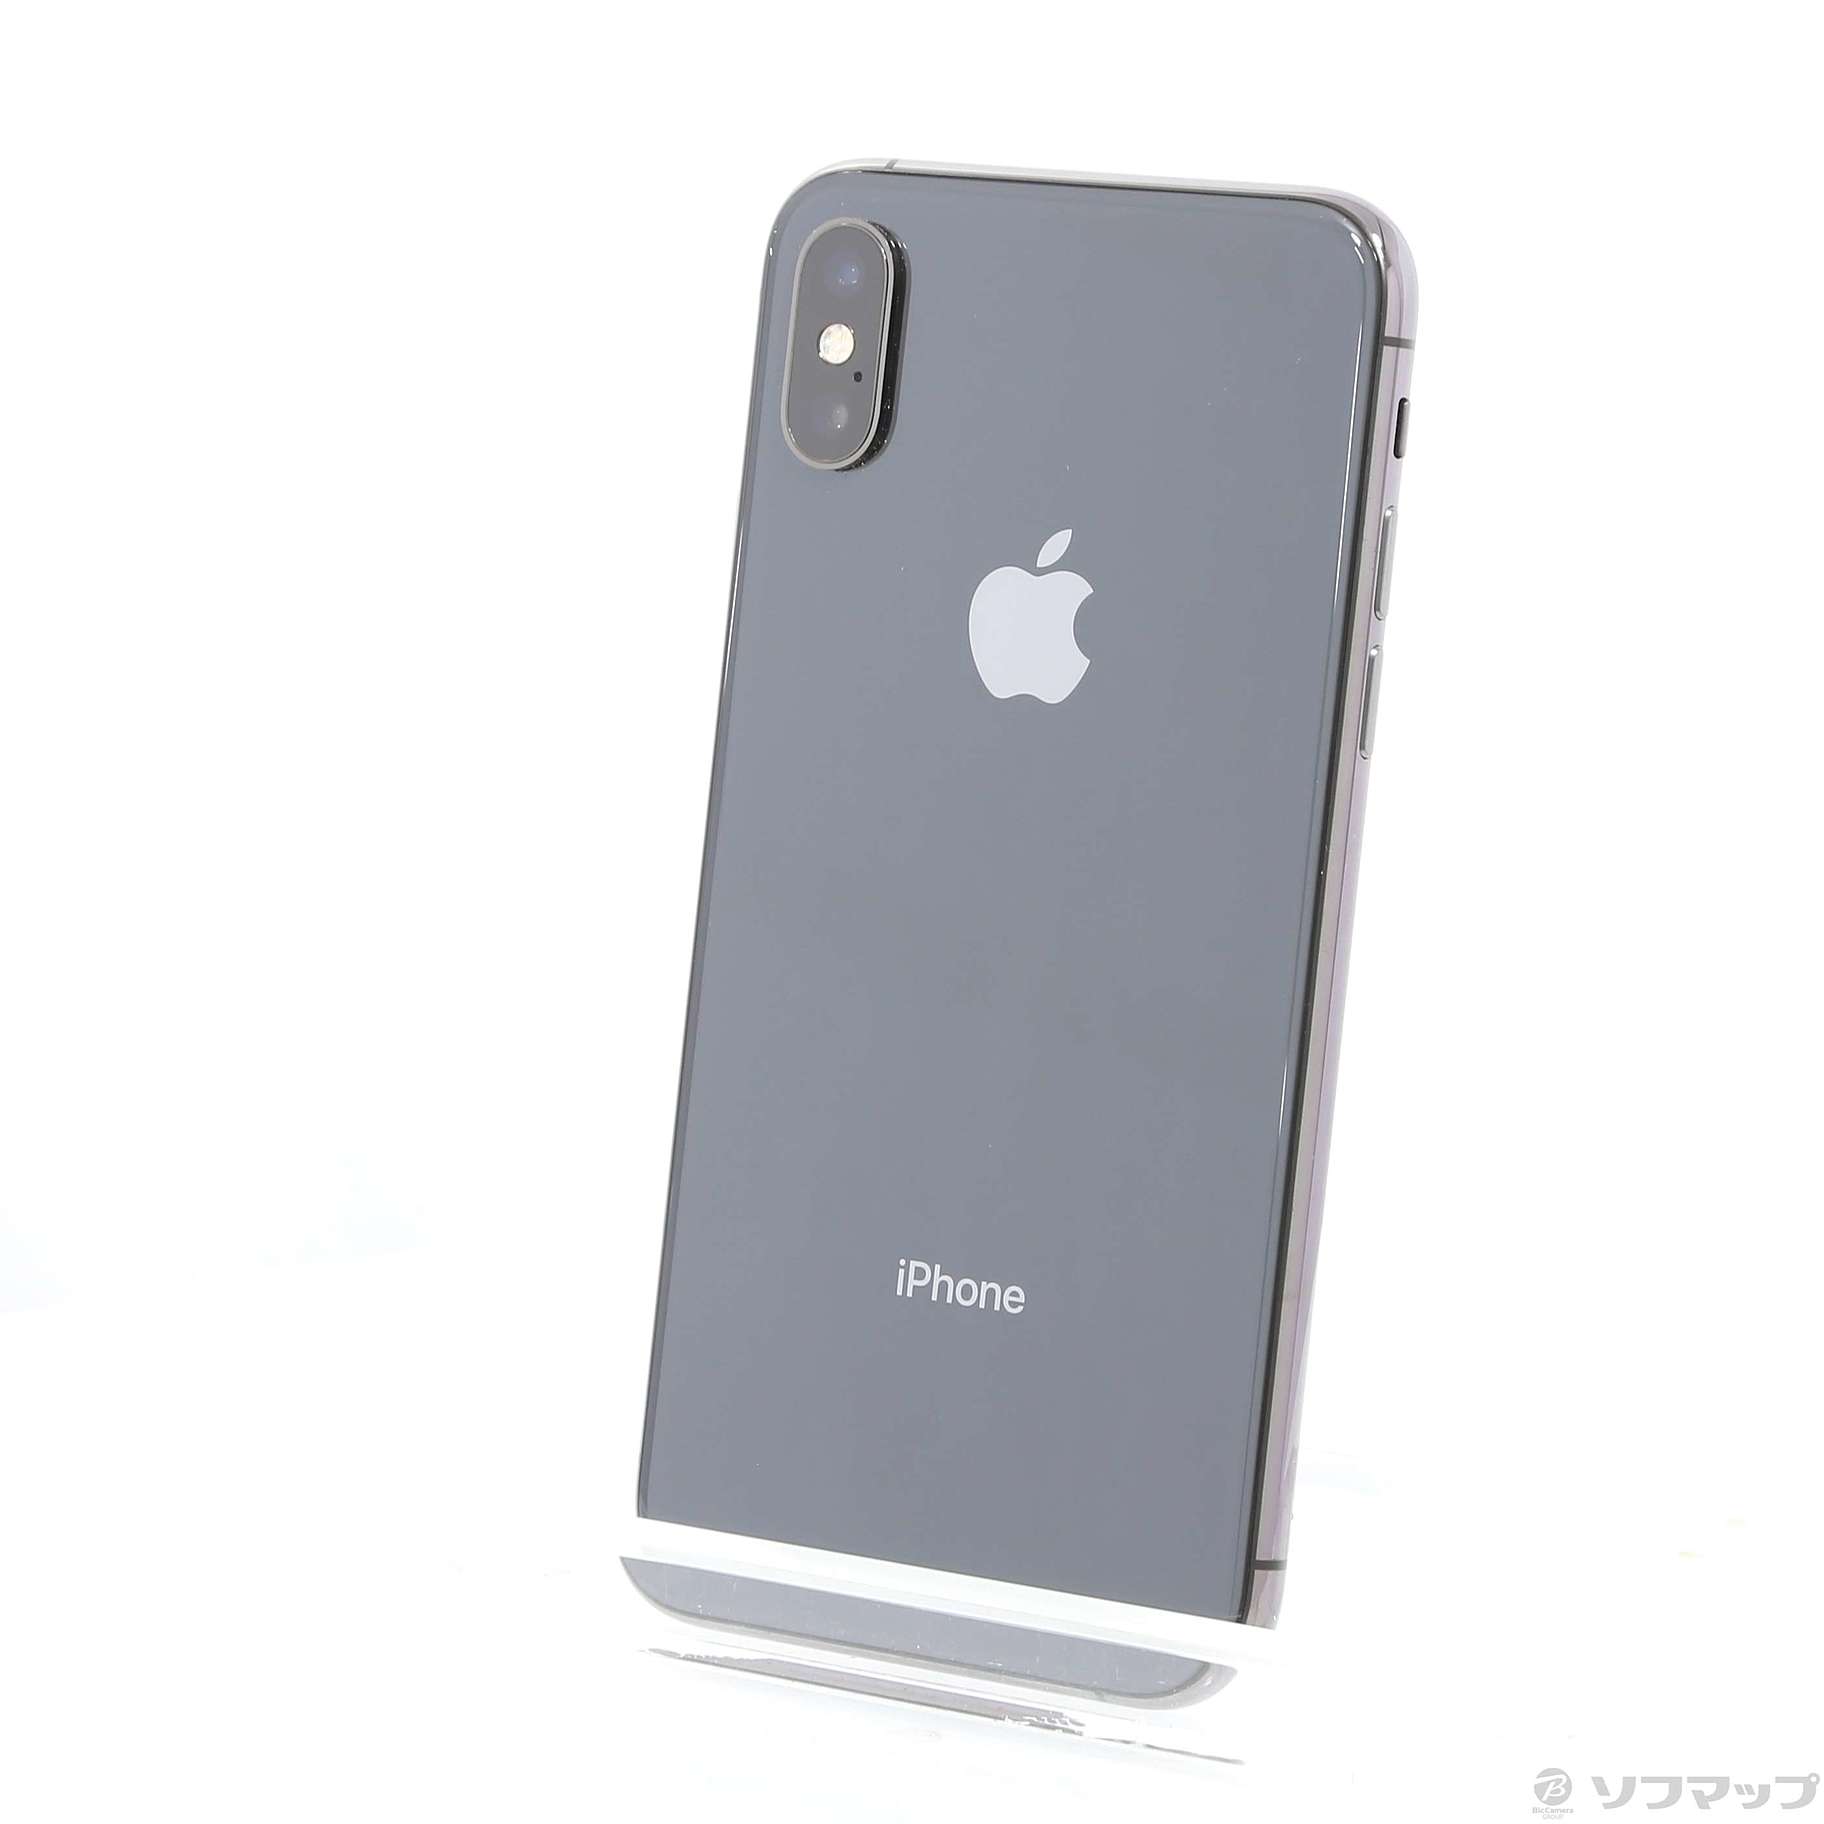 衝撃特価 iphone xs 64gb スペースグレイ - スマートフォン/携帯電話